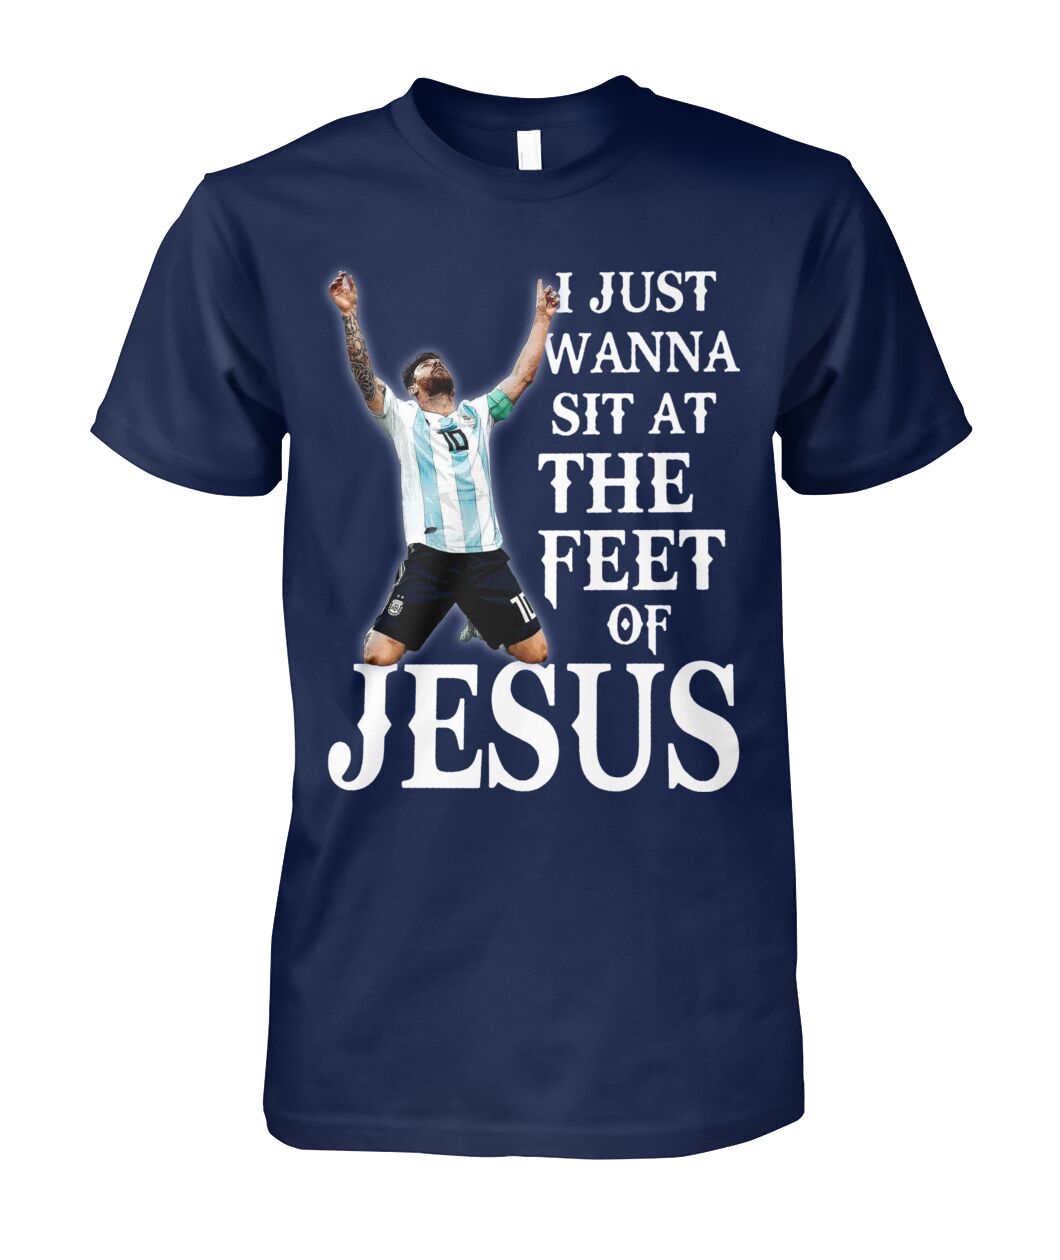 i just wanna sit at the feel of jesus messi shirt 2017 qgxQz